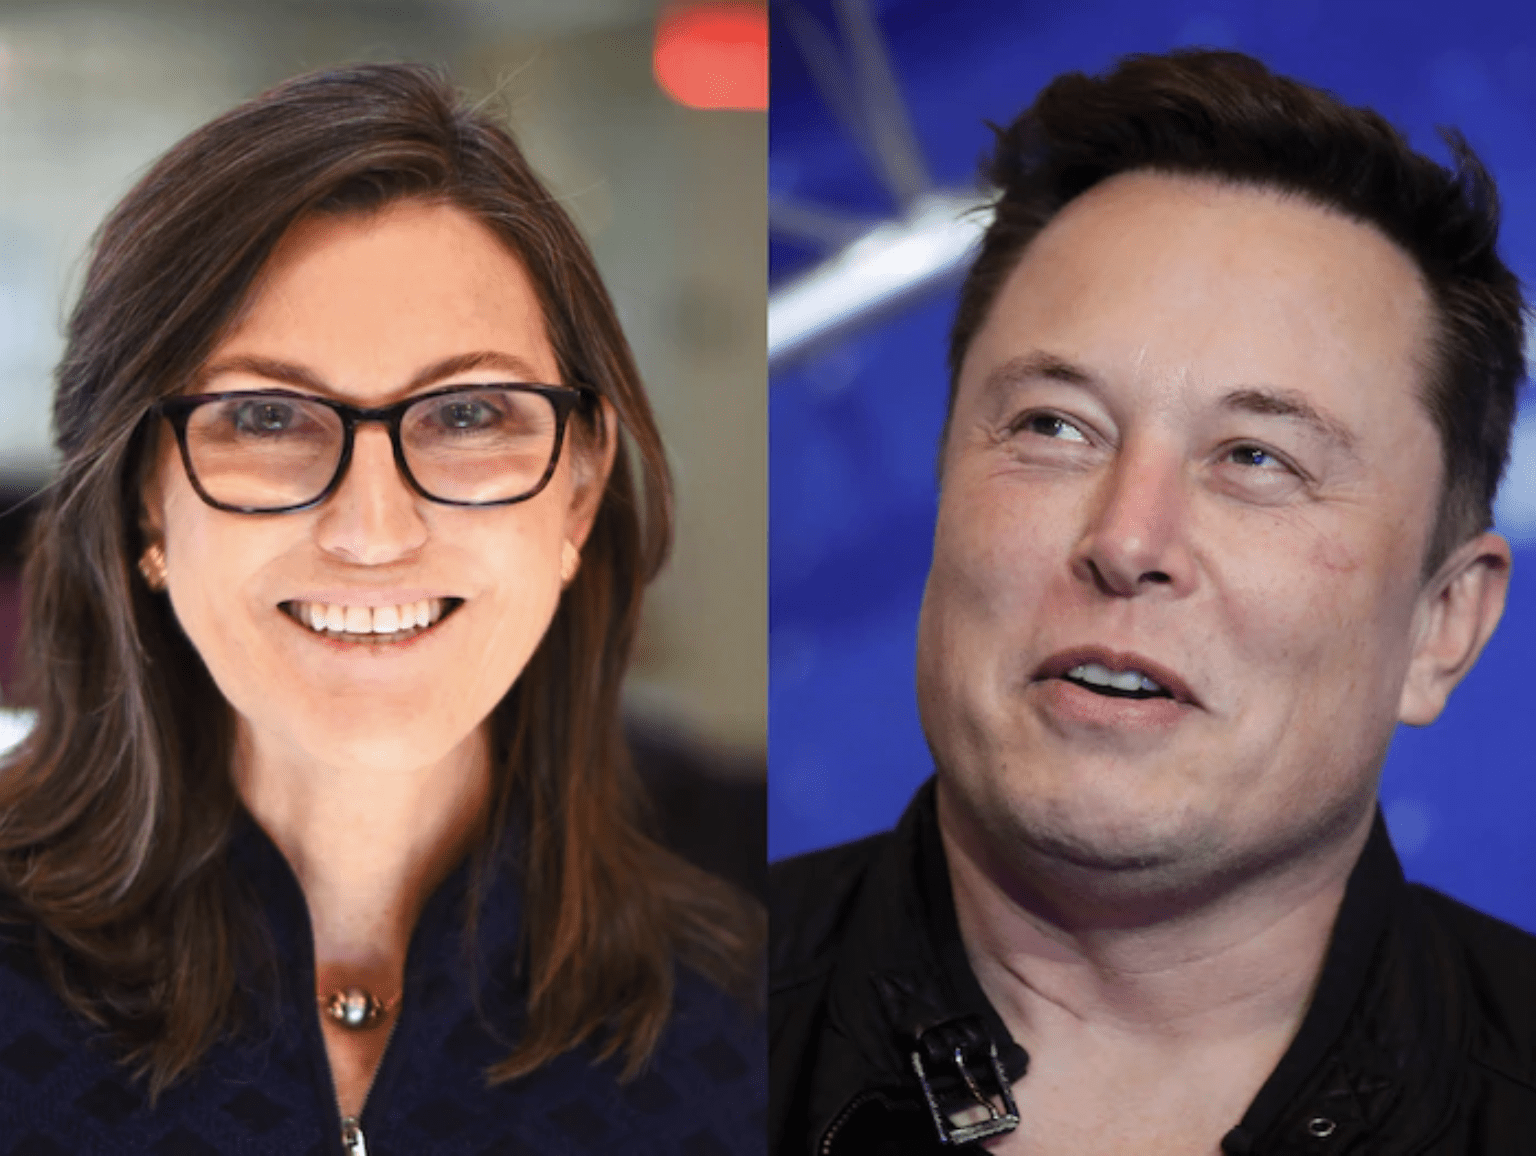 Ark Invest’in TSLA Fiyat Tahminine Karşı Elon Musk’ın Cevabı